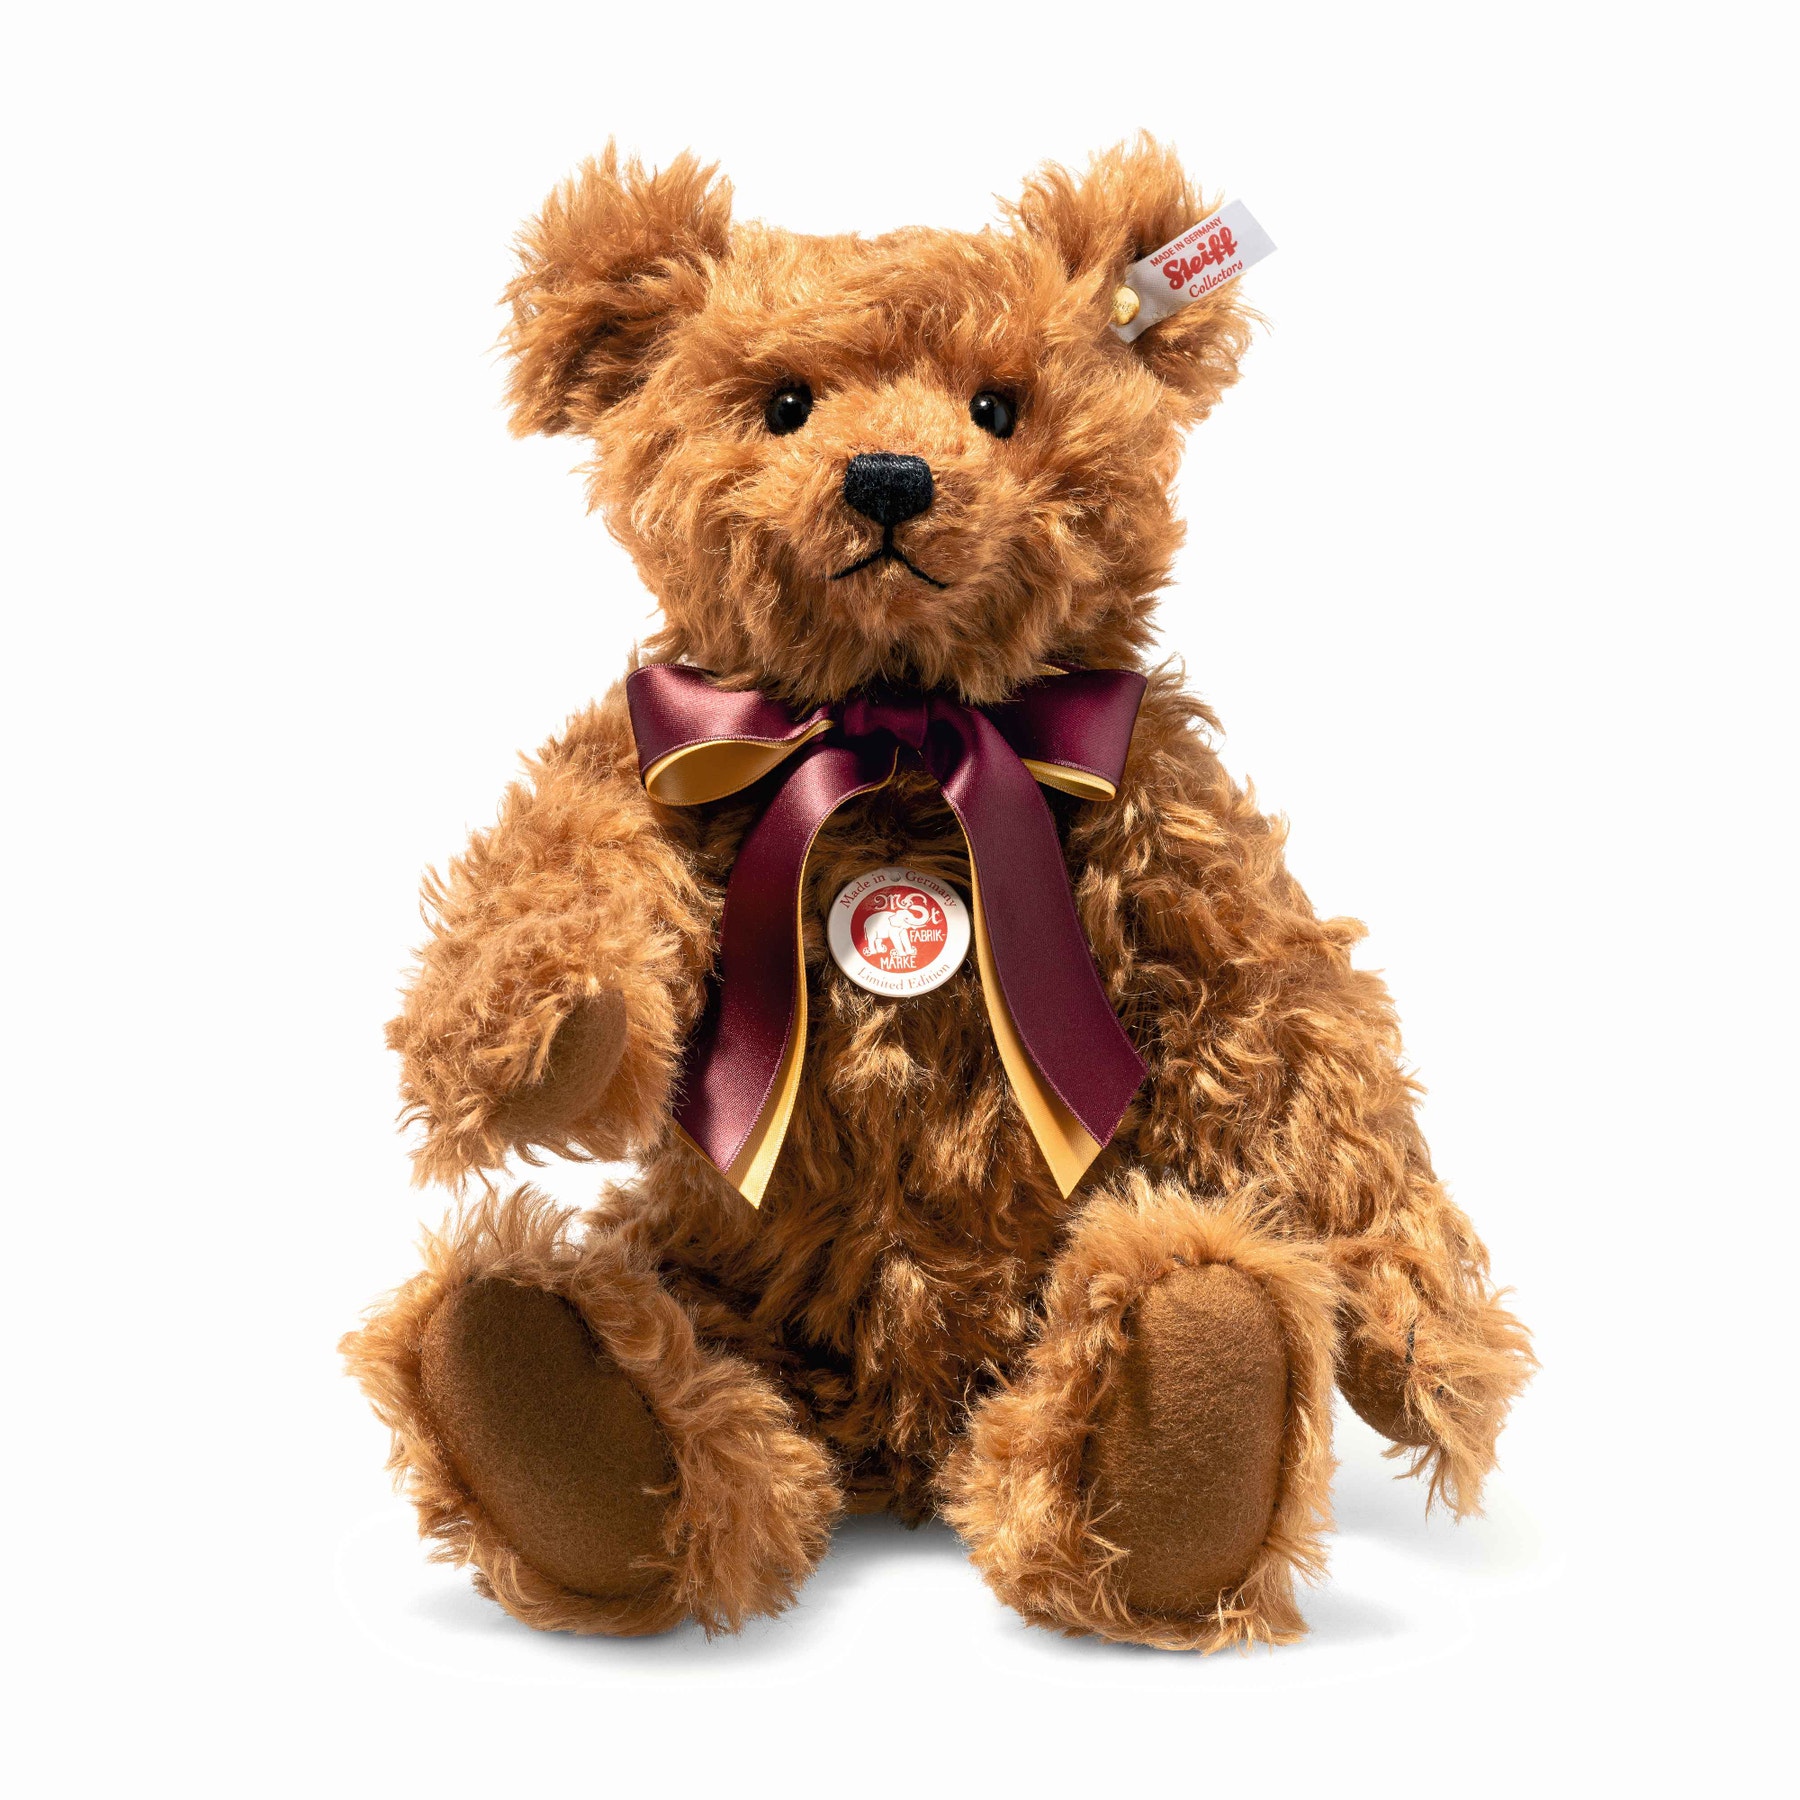 2023 British Collectors’ Teddy bear